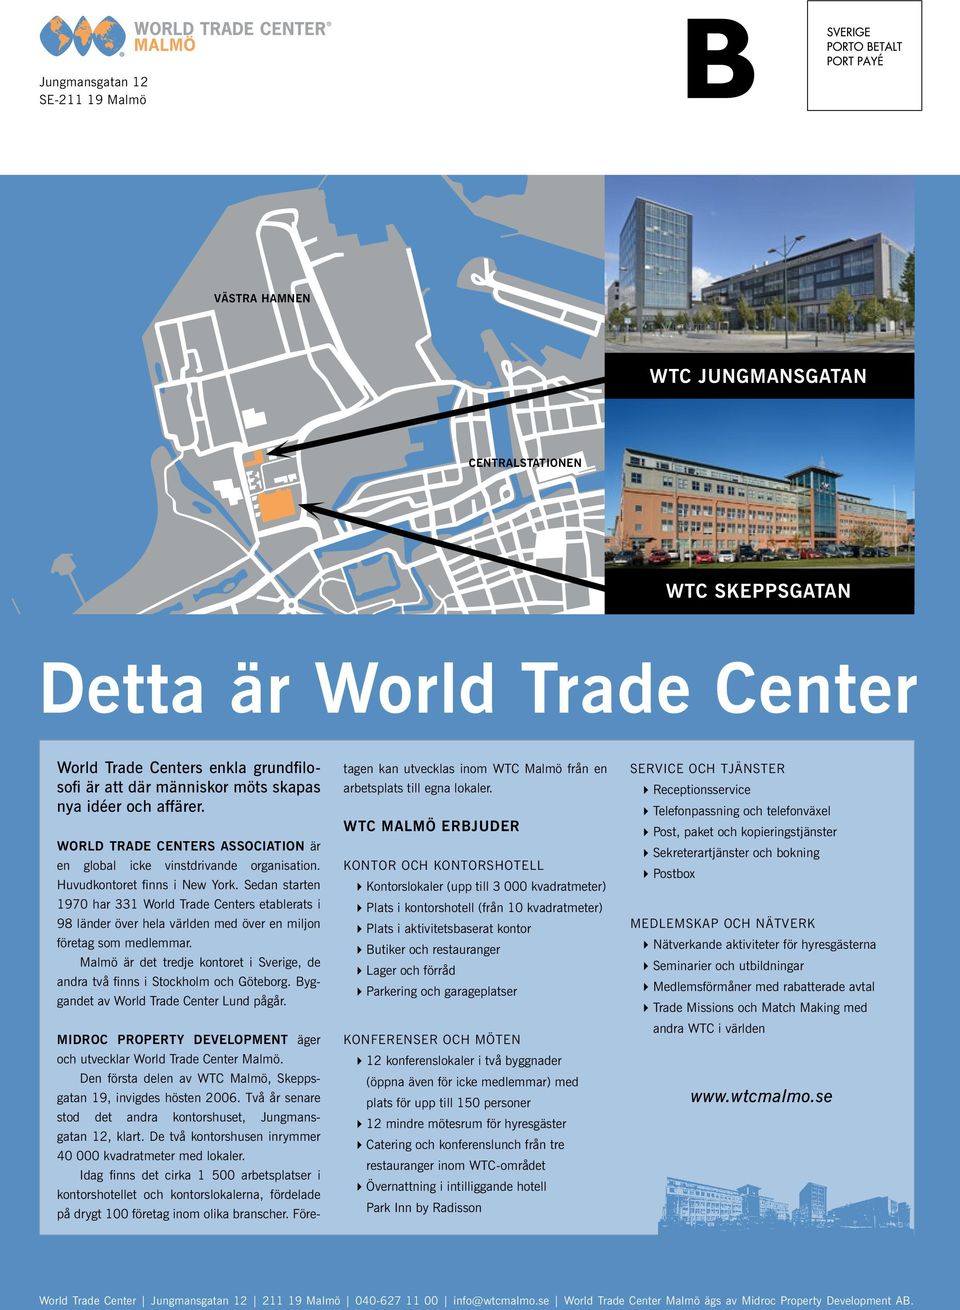 Sedan starten 1970 har 331 World Trade Centers etablerats i 98 länder över hela världen med över en miljon företag som medlemmar.